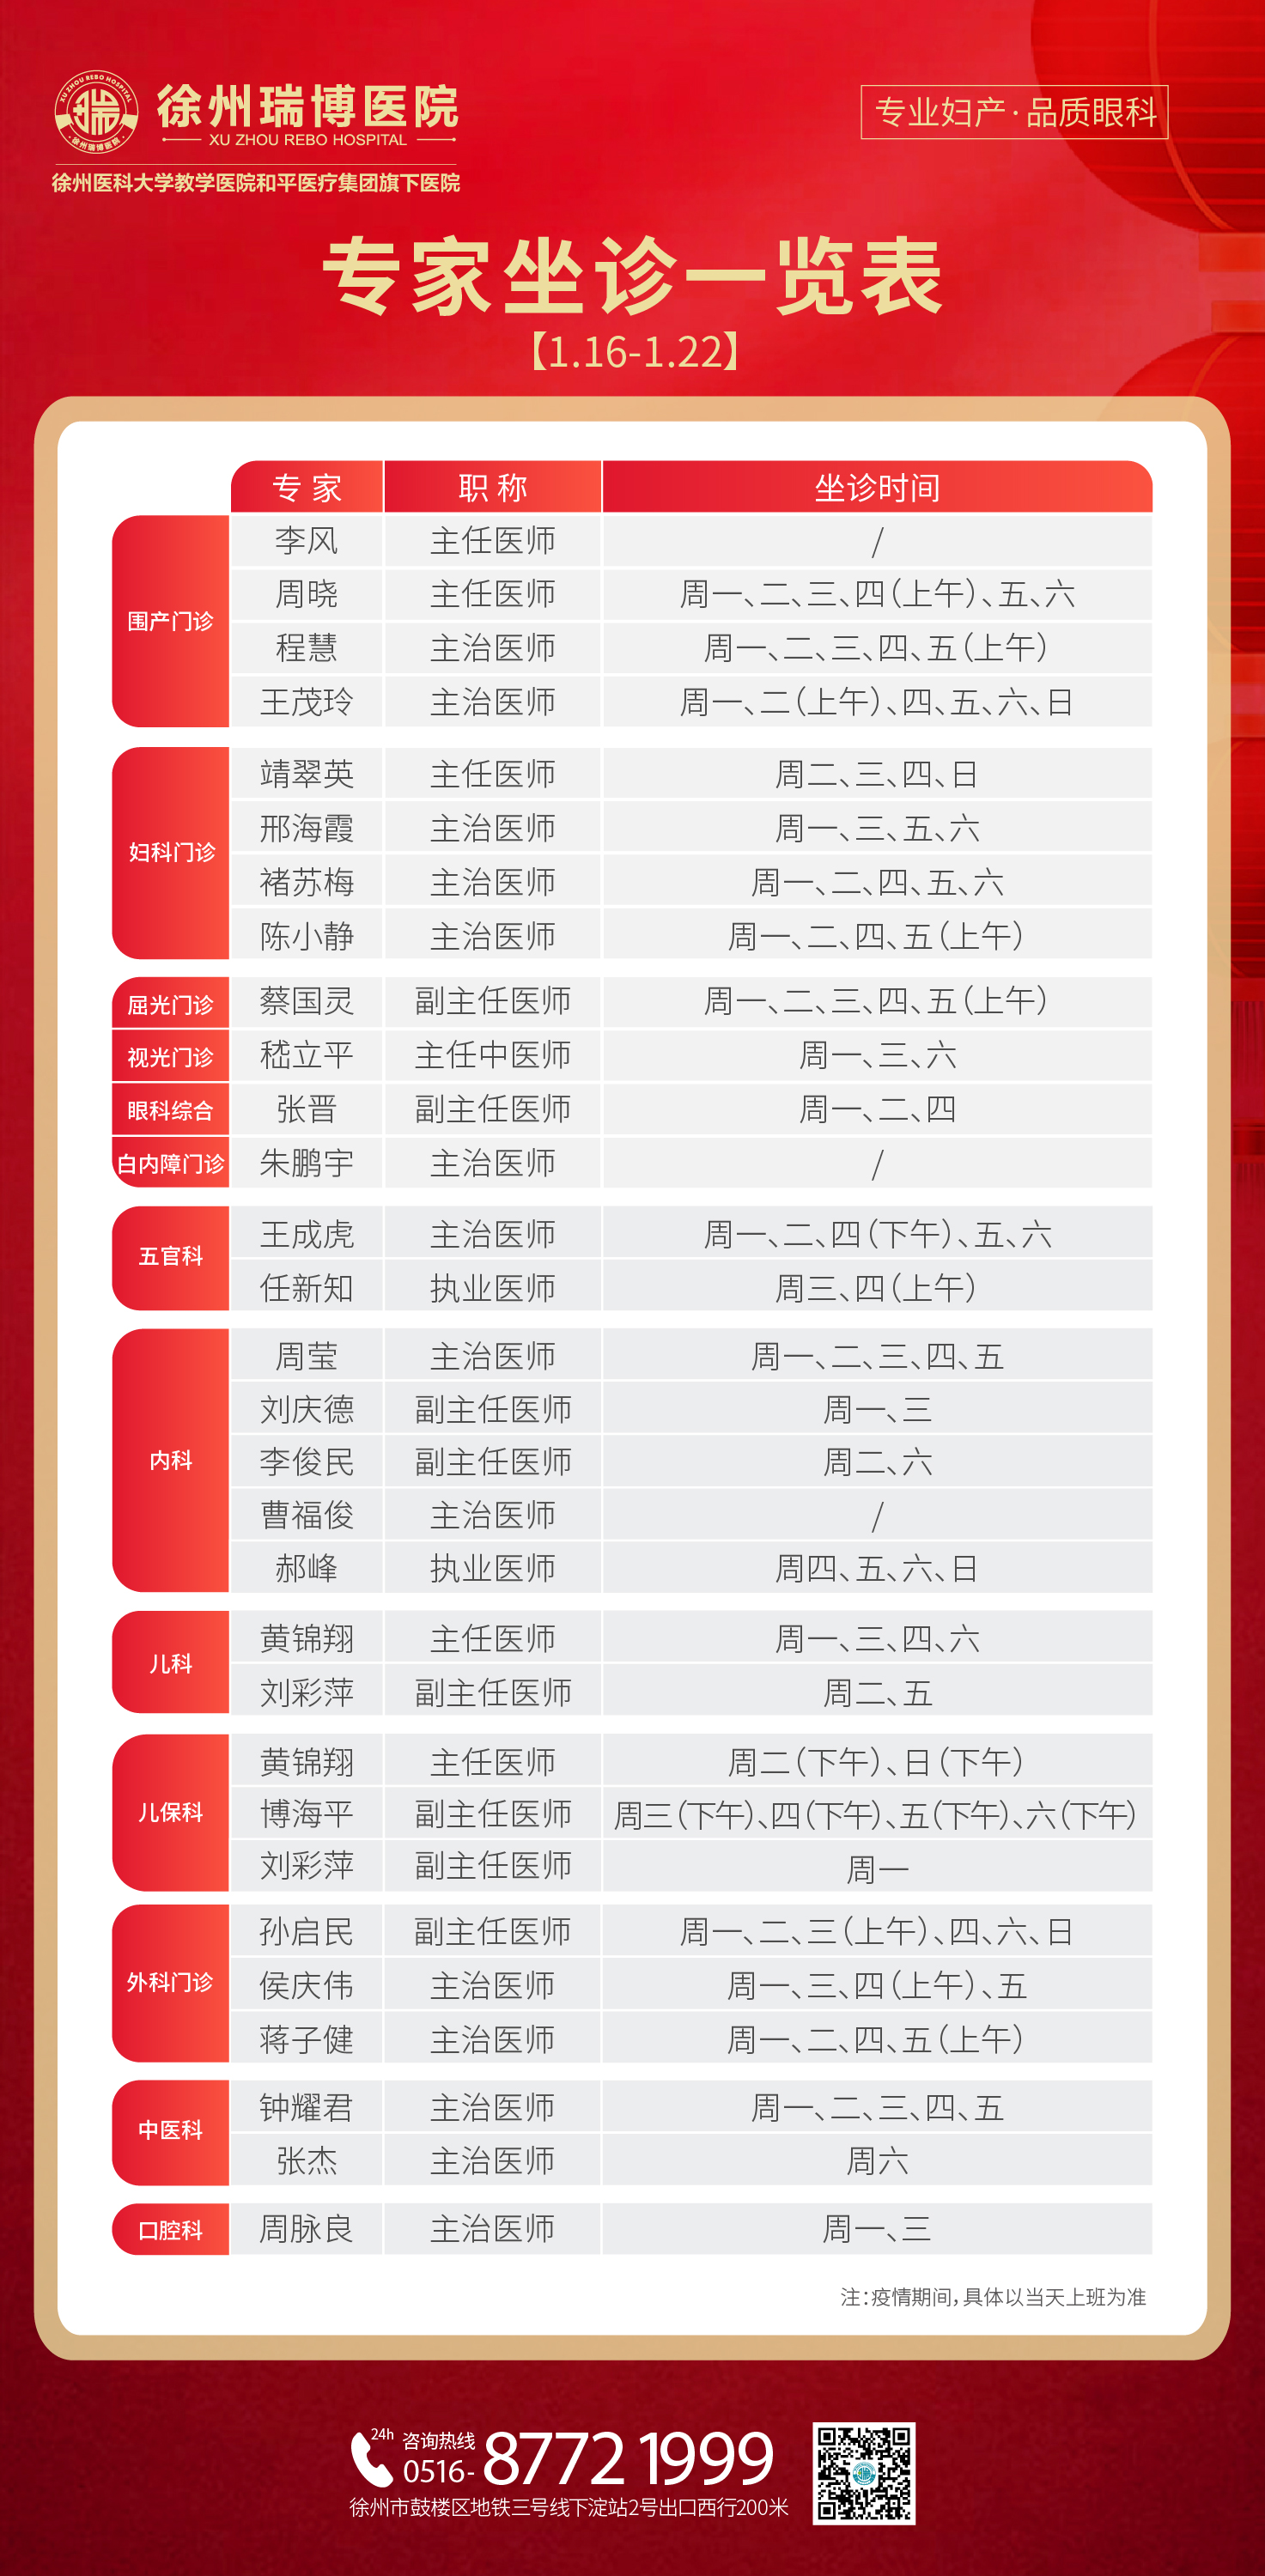 徐州瑞博医院1月16日-29日专家坐诊一览表